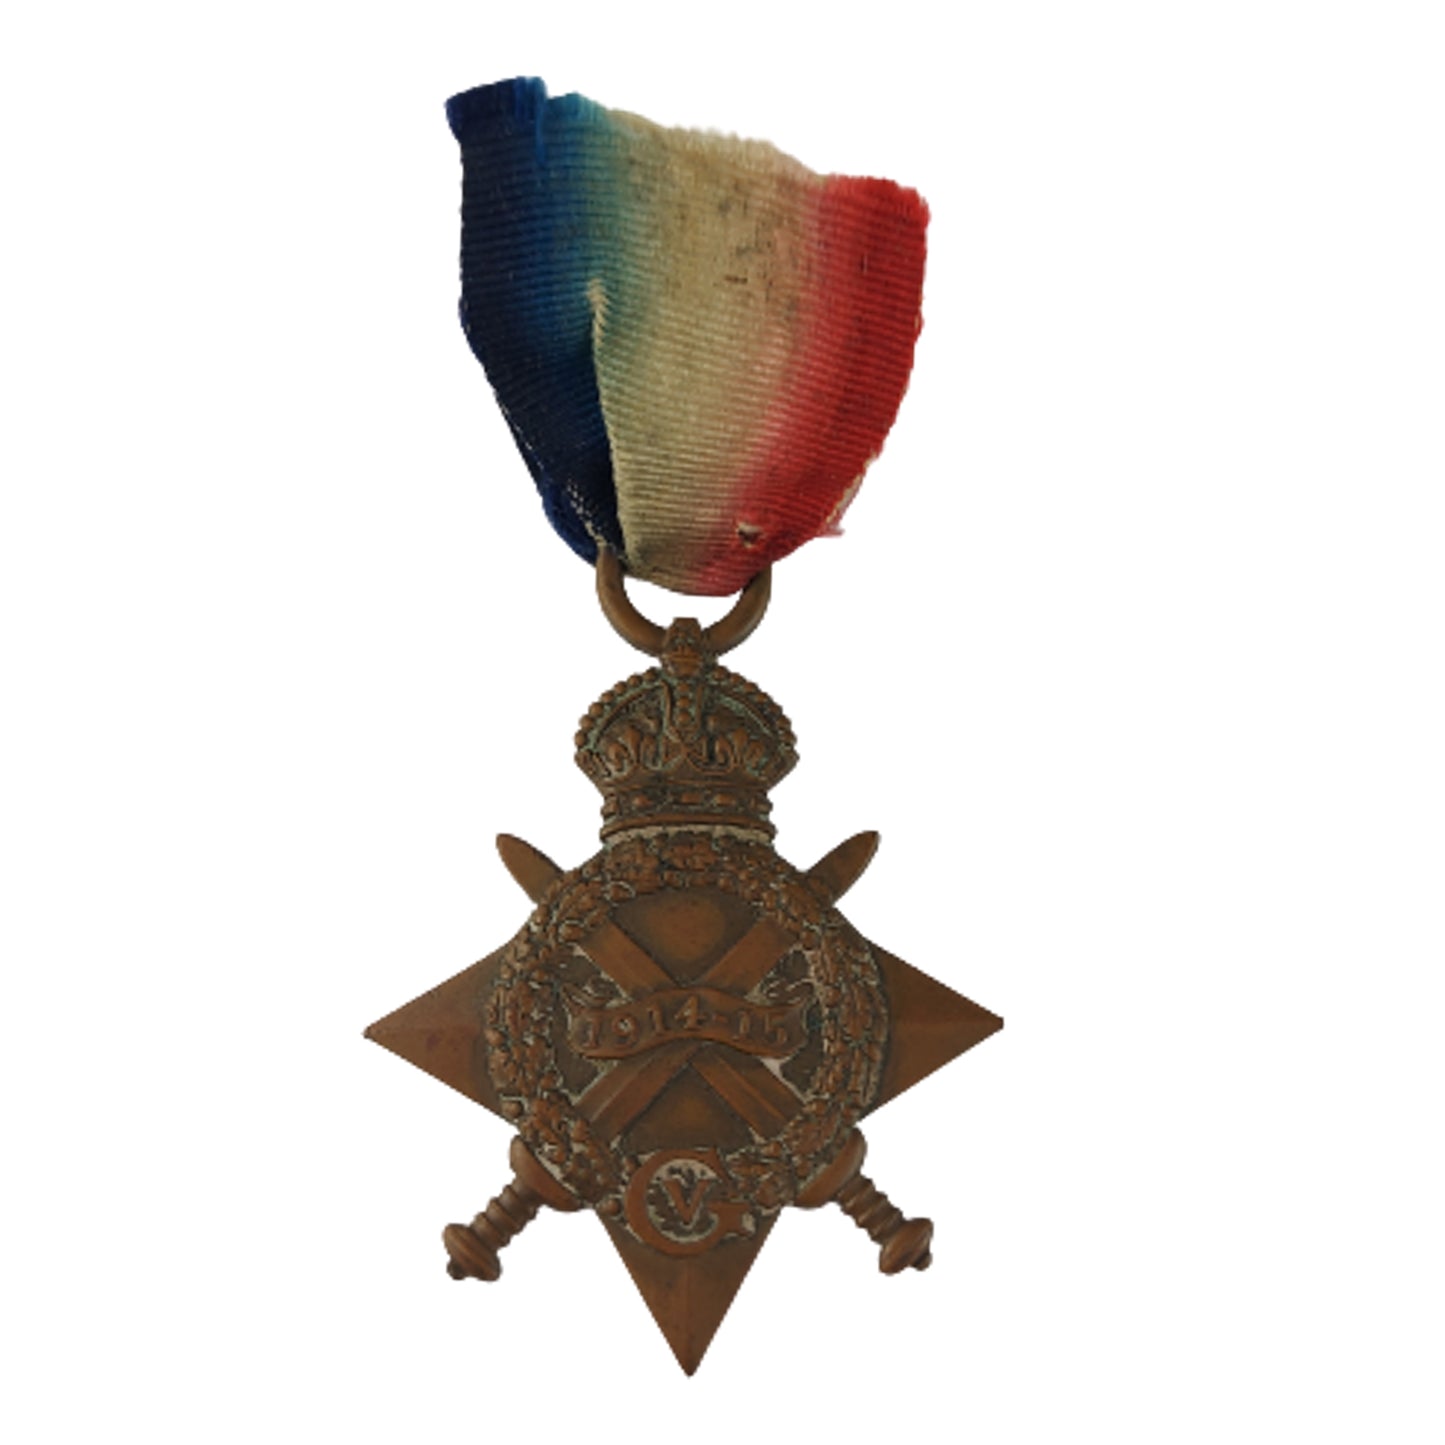 WW1 British Medal Set - Stapleton Family